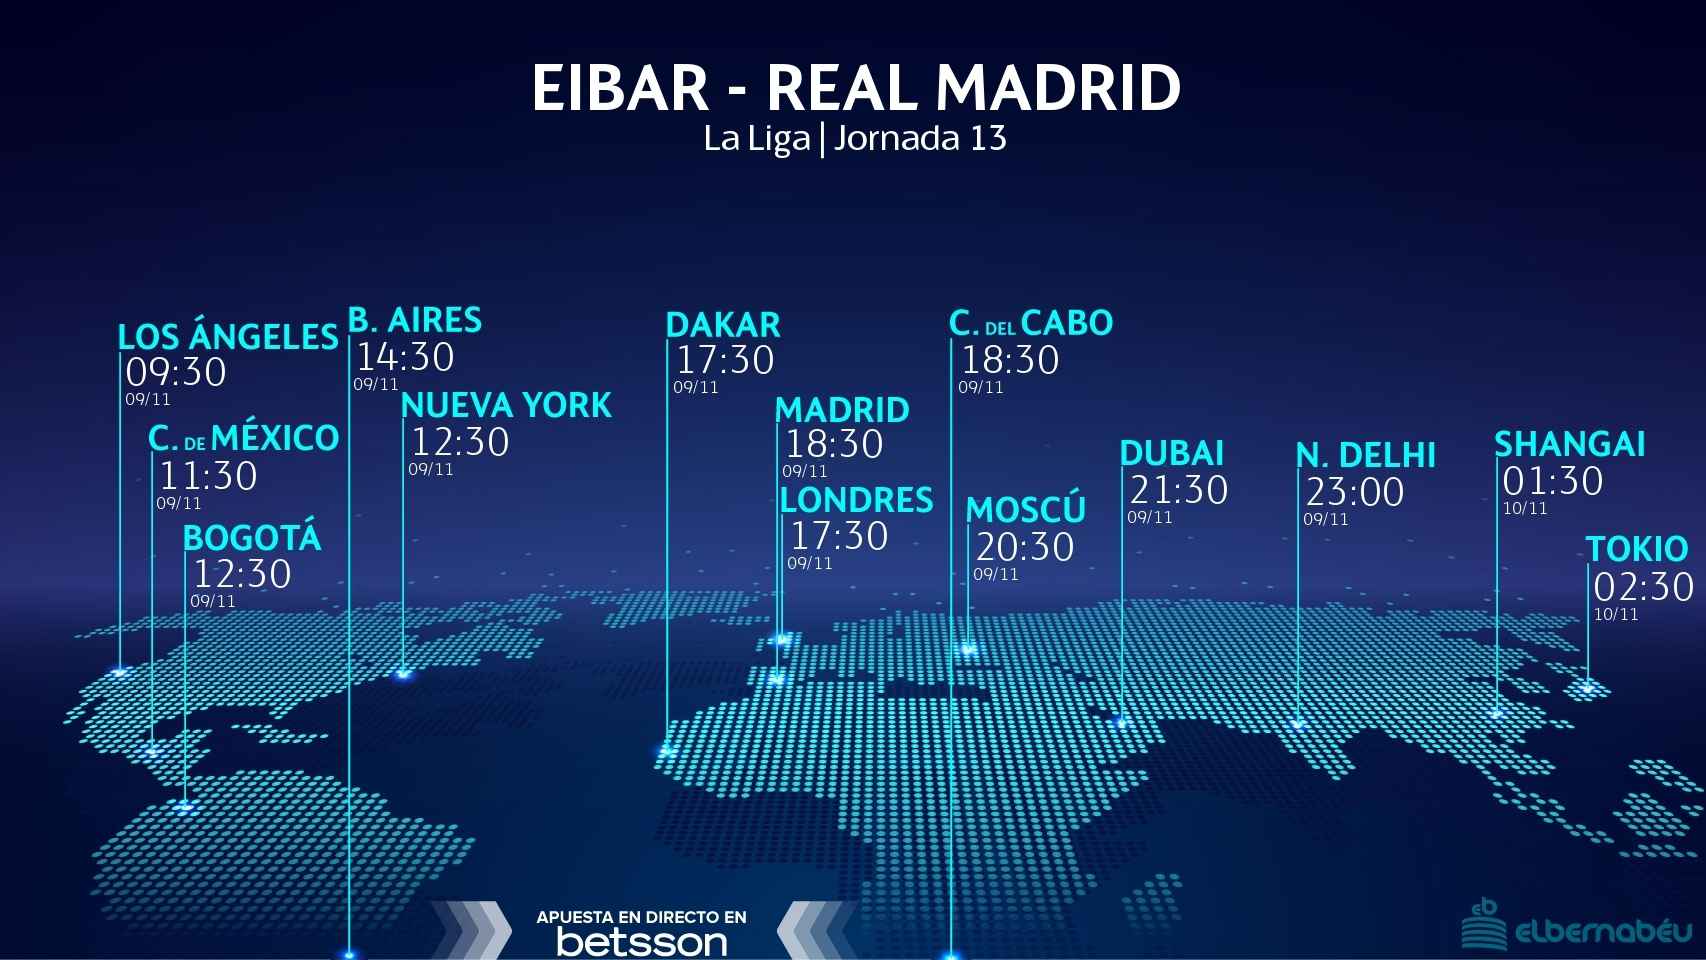 Eibar - Real Madrid.